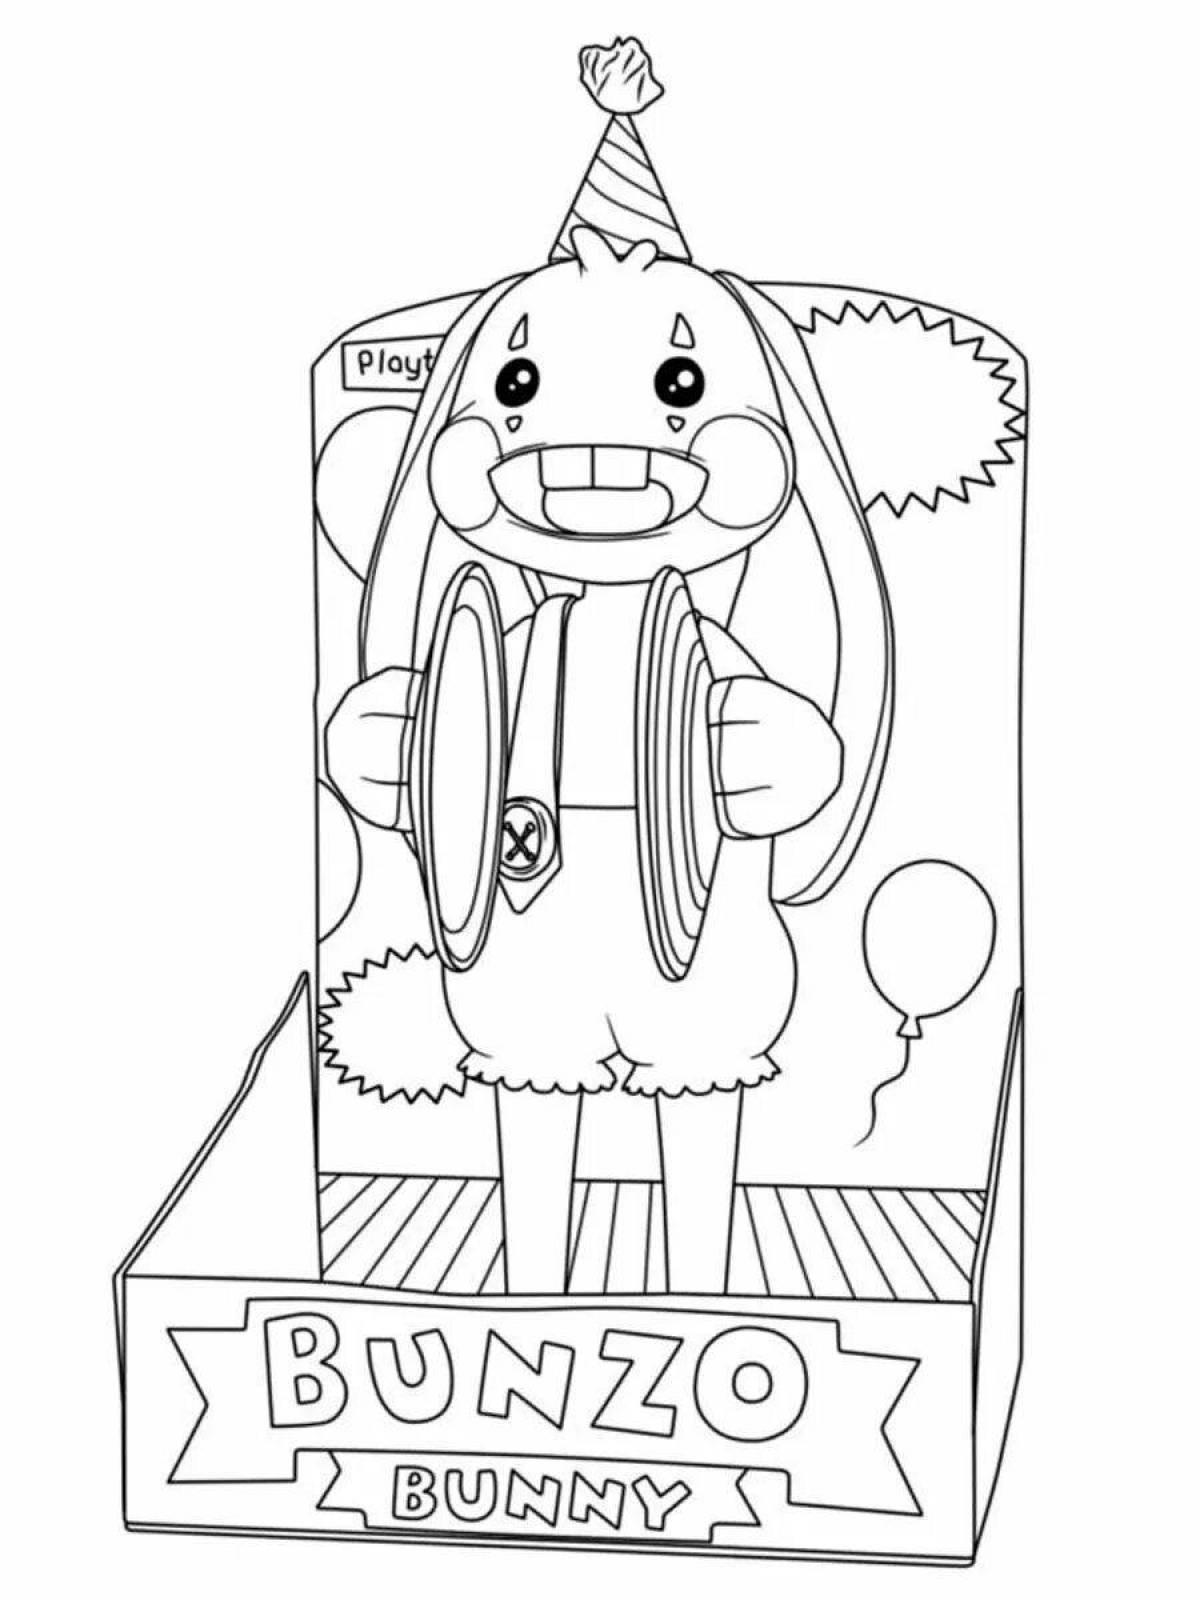 Bonzo bunny funny coloring book